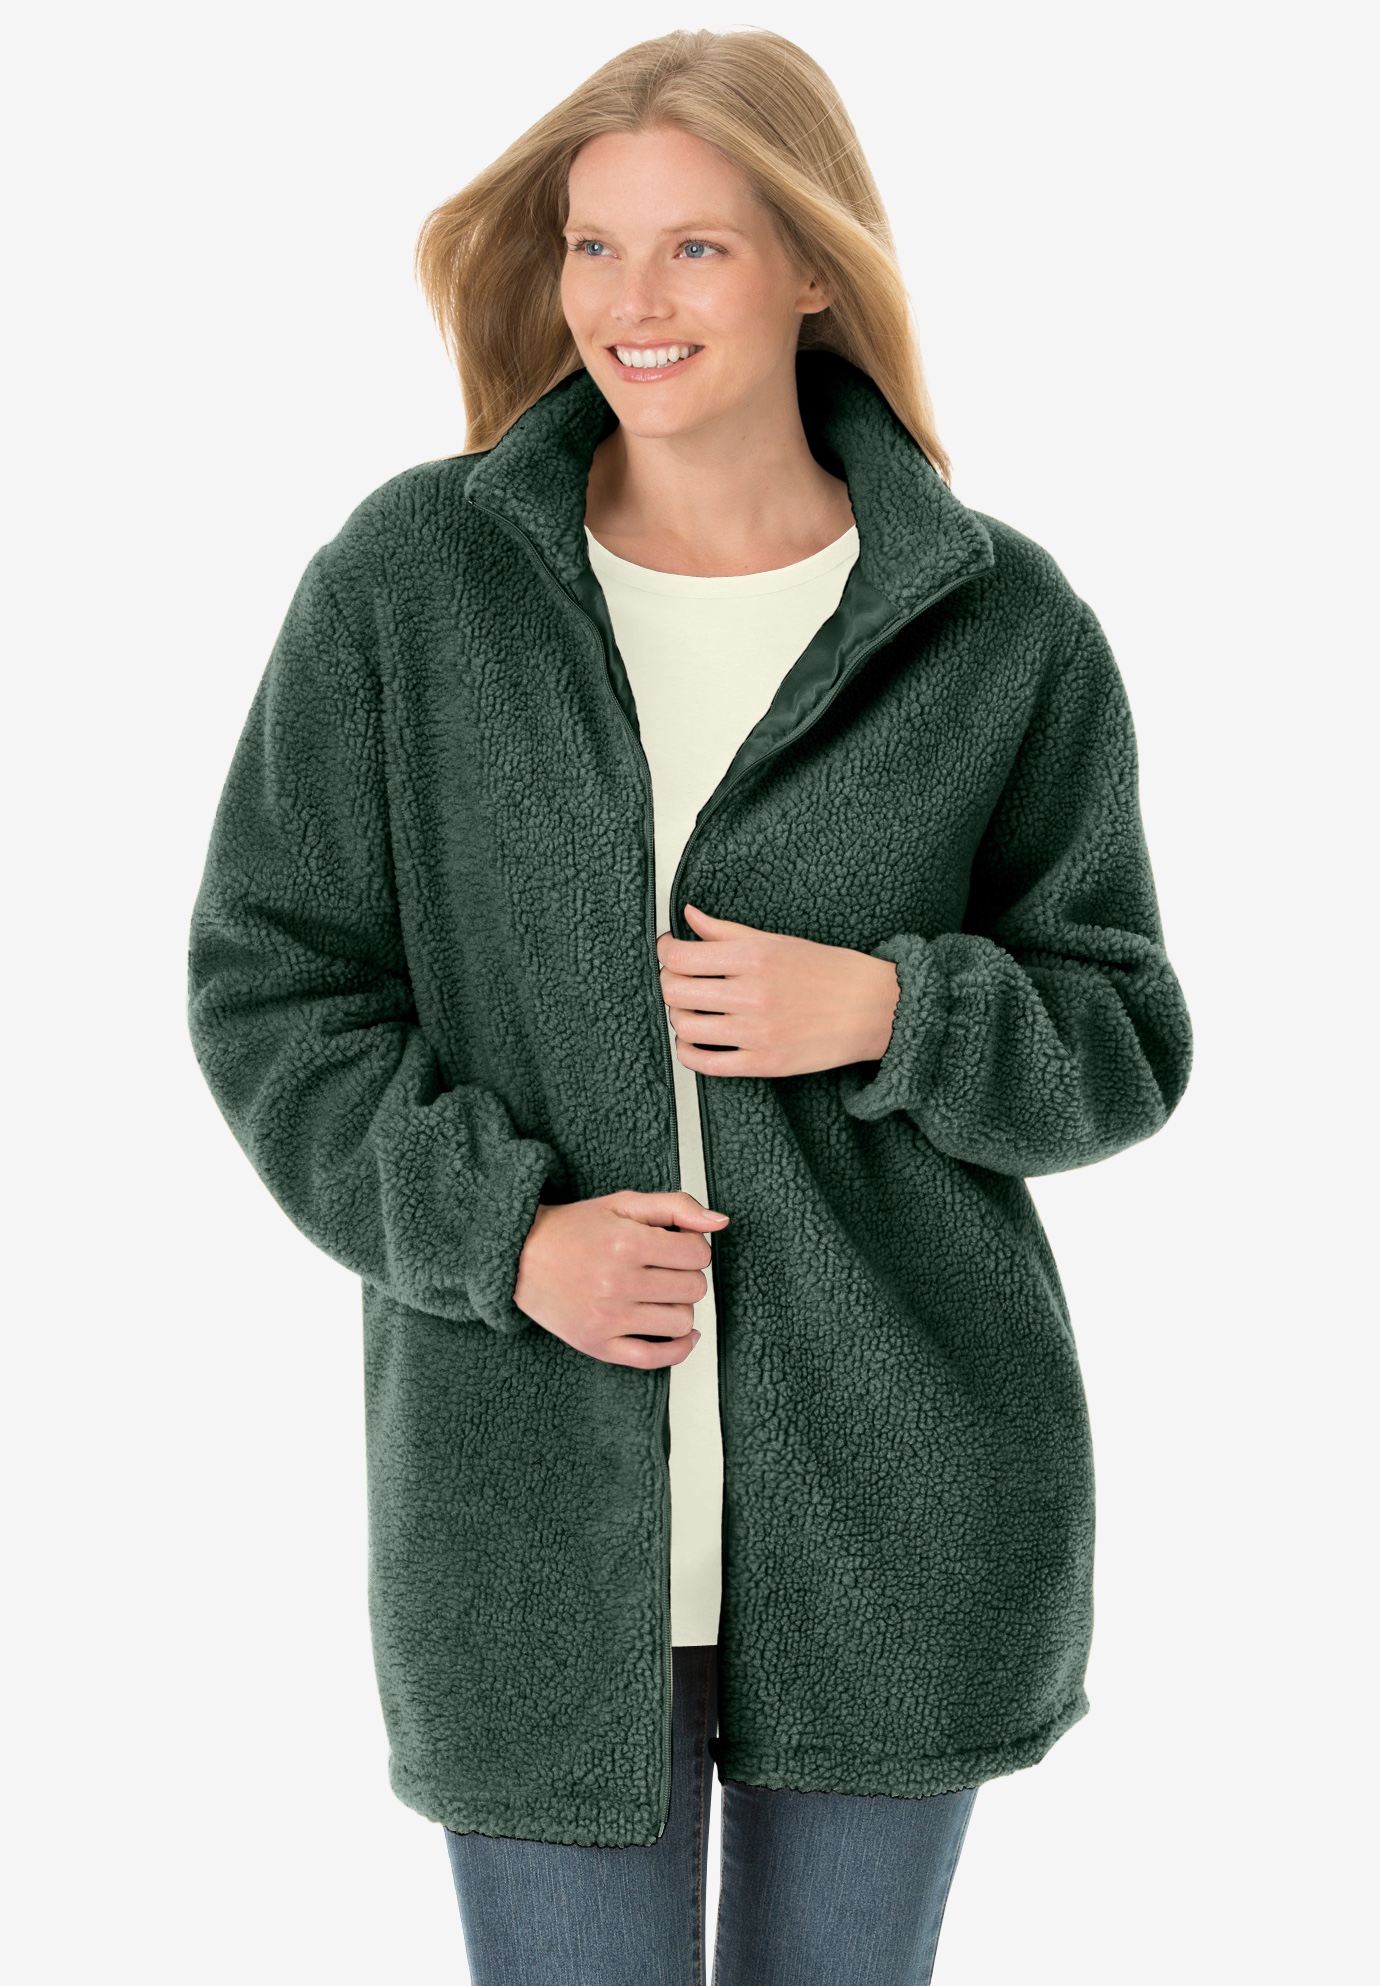 ThusFar Women Hooded Cardigan Fluffy Fleece Coat Open Front Jacket Outwear Pockets 